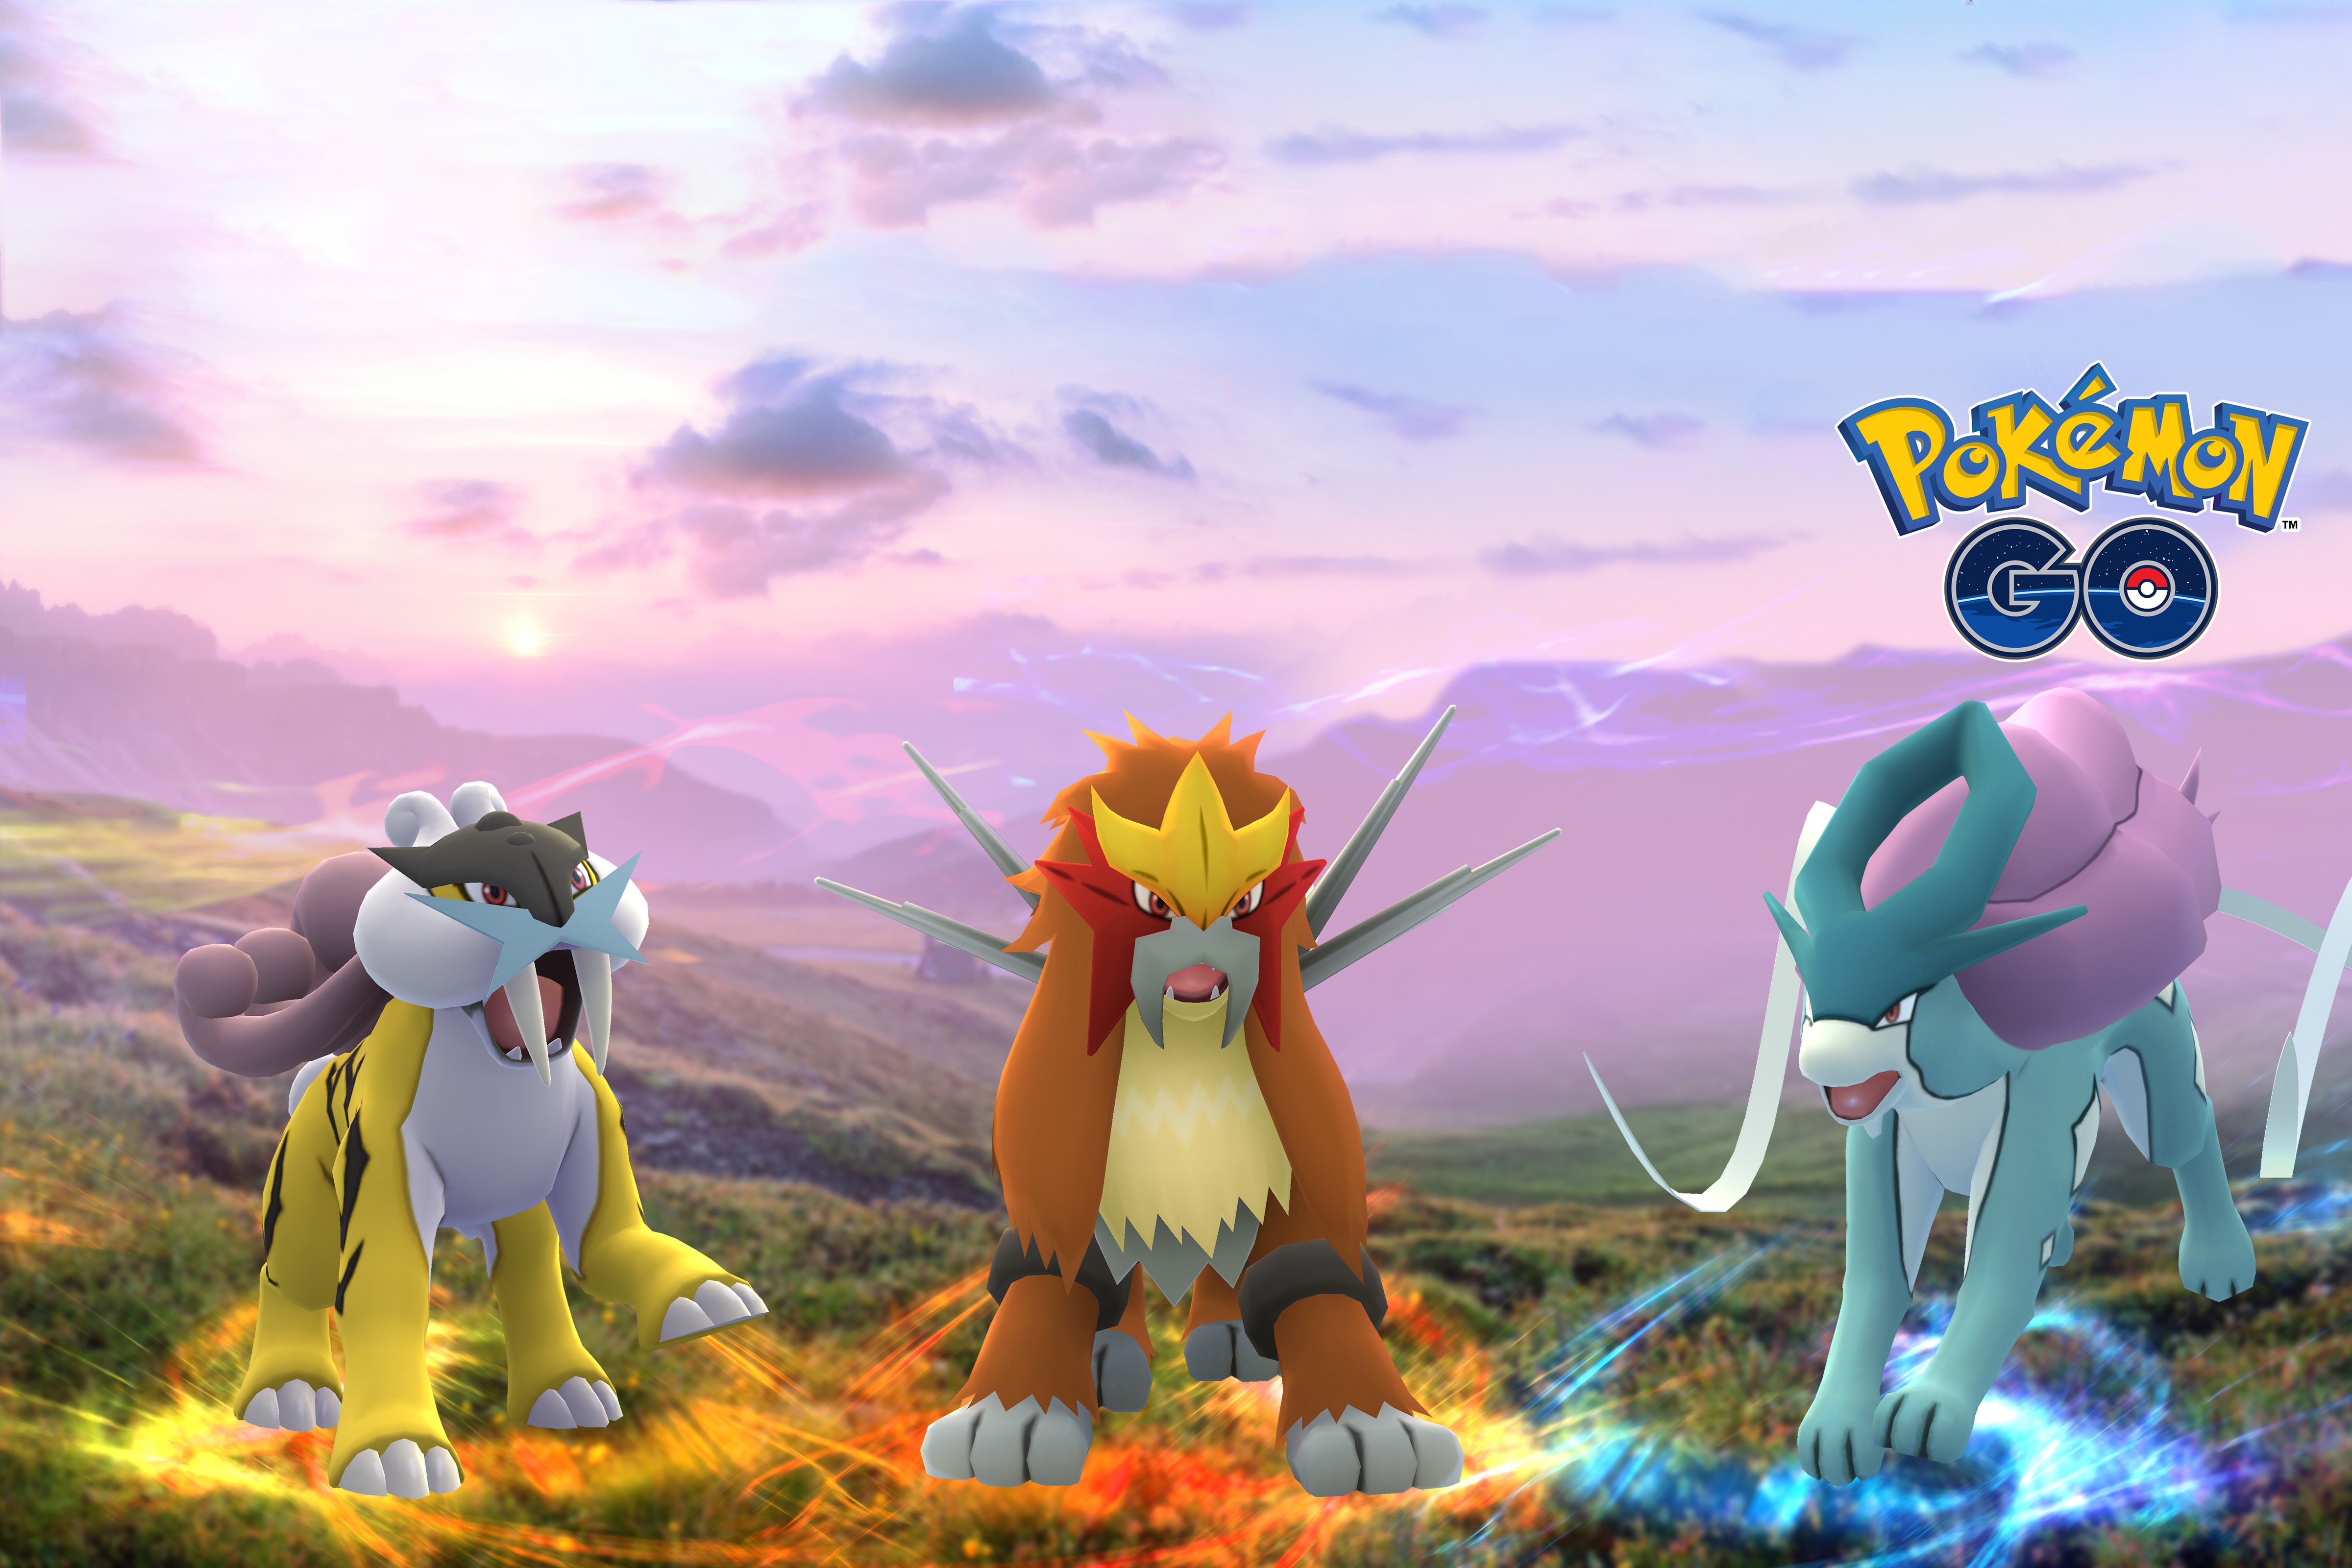 Pokémon GO 團體戰加推二代目傳說小精靈